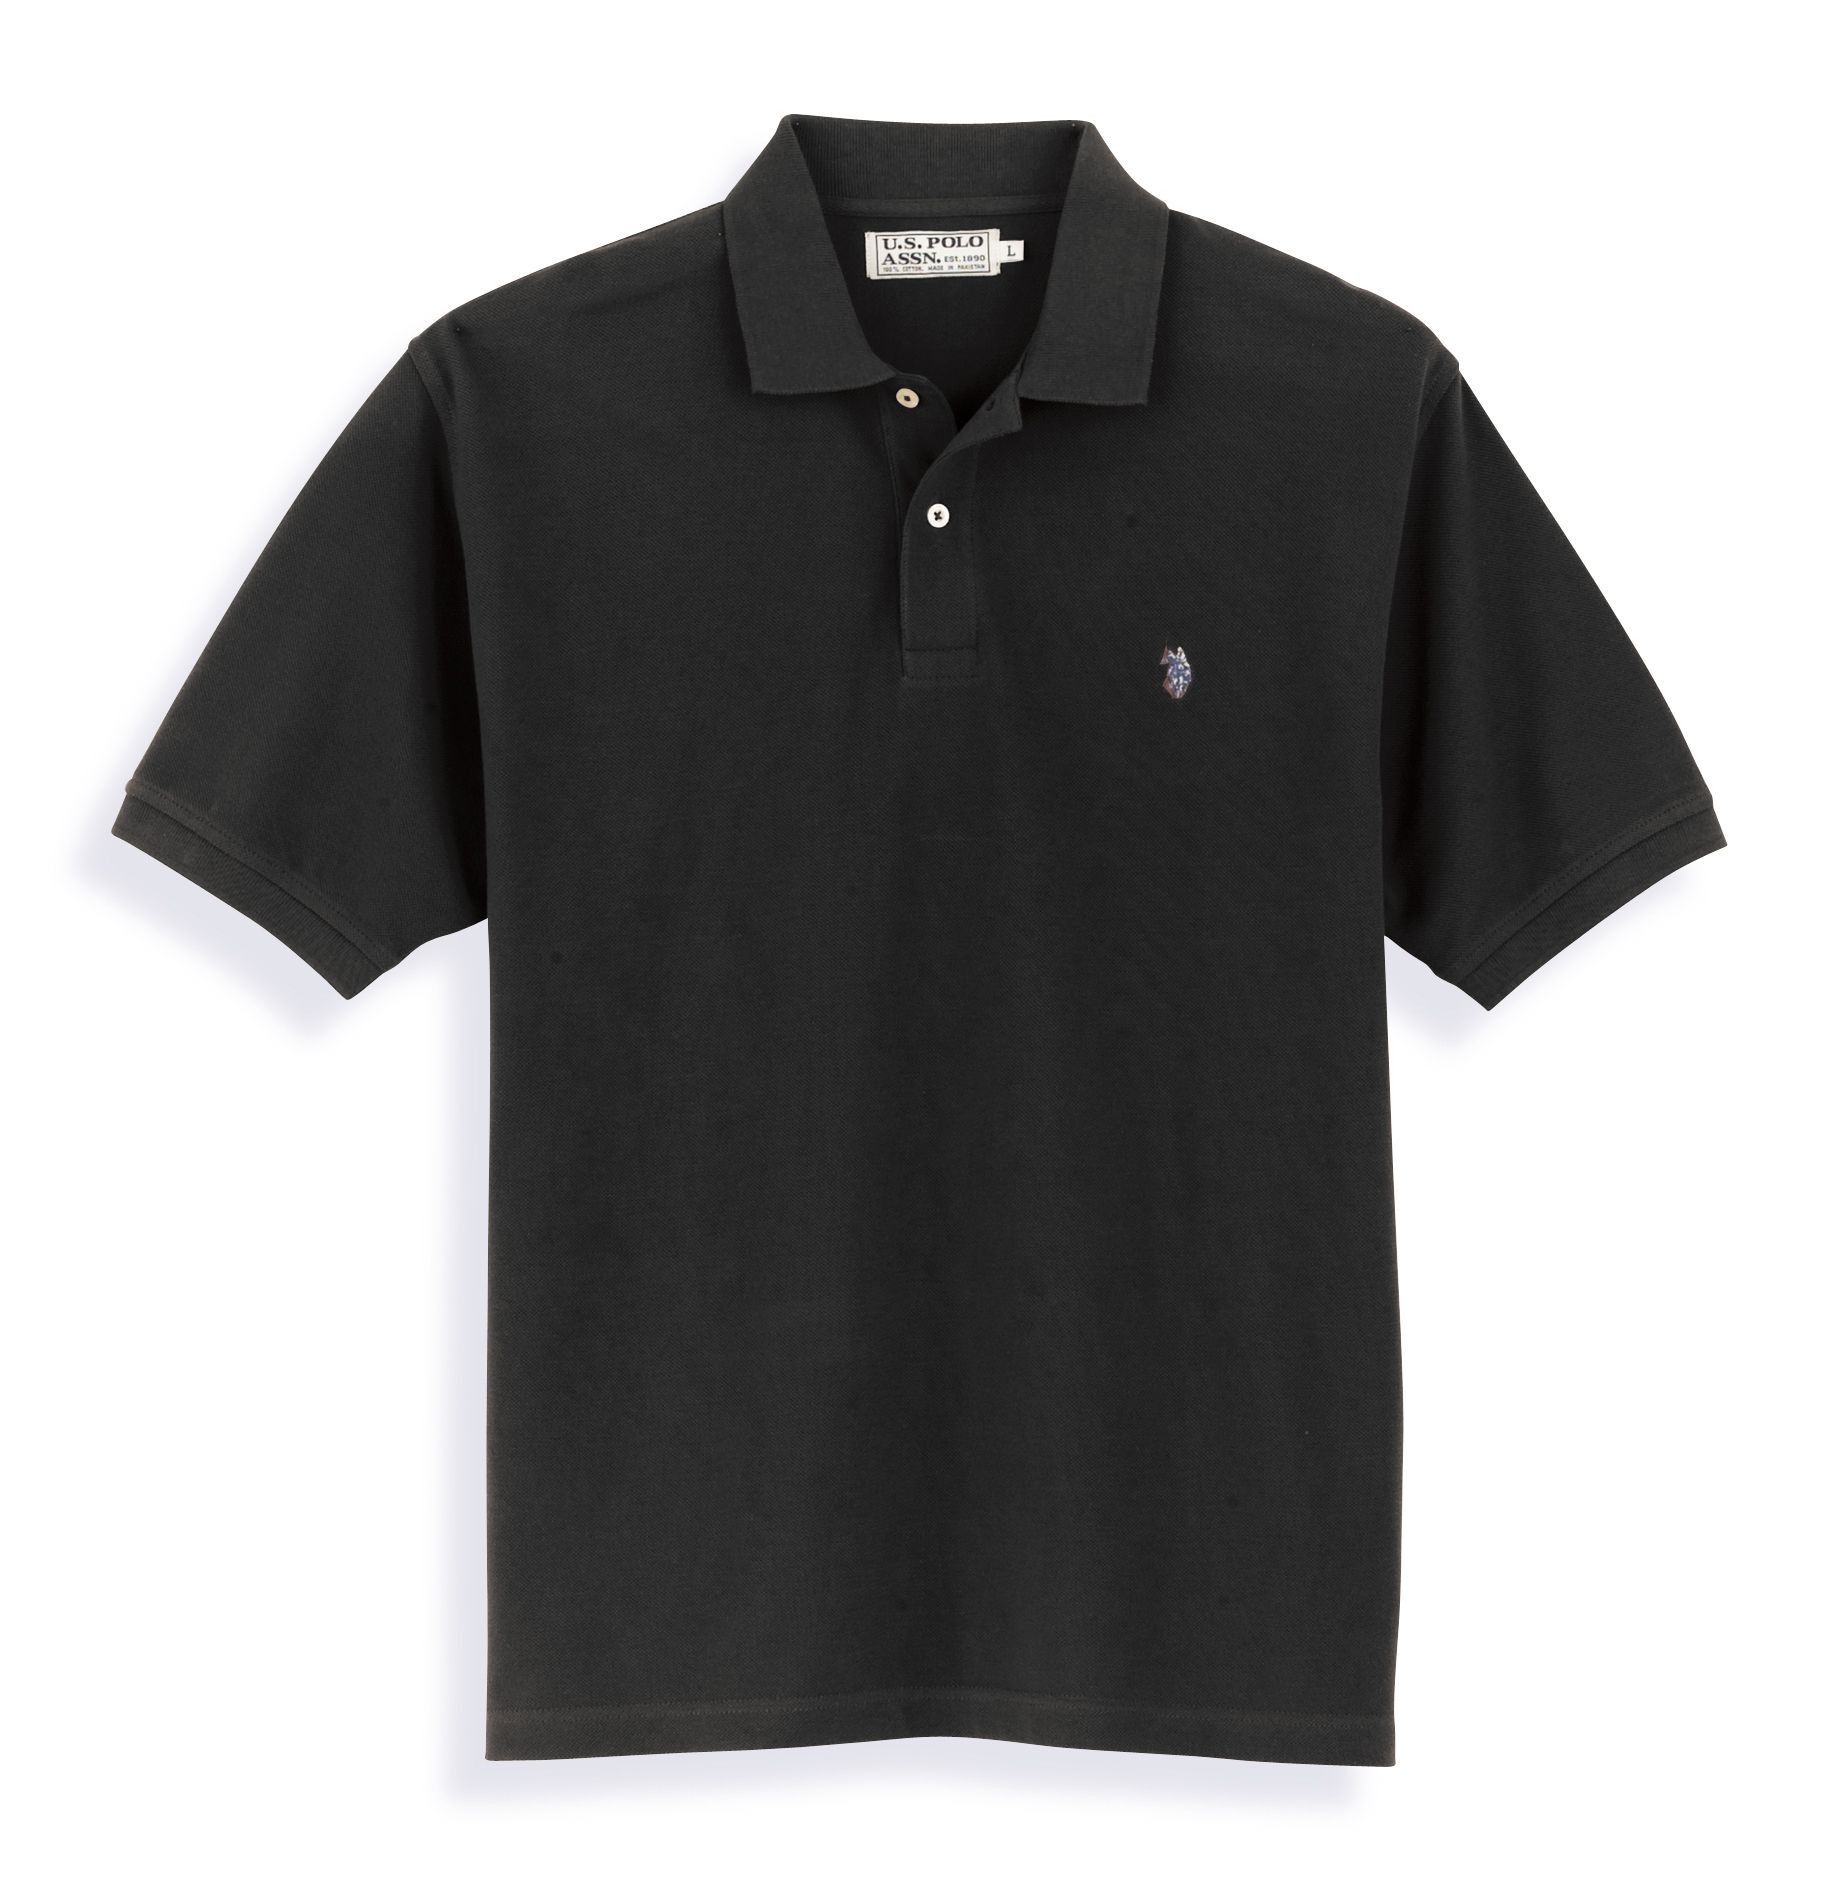 U.S. Polo Assn. Player's Edition Men's Short Sleeve Polo Shirt